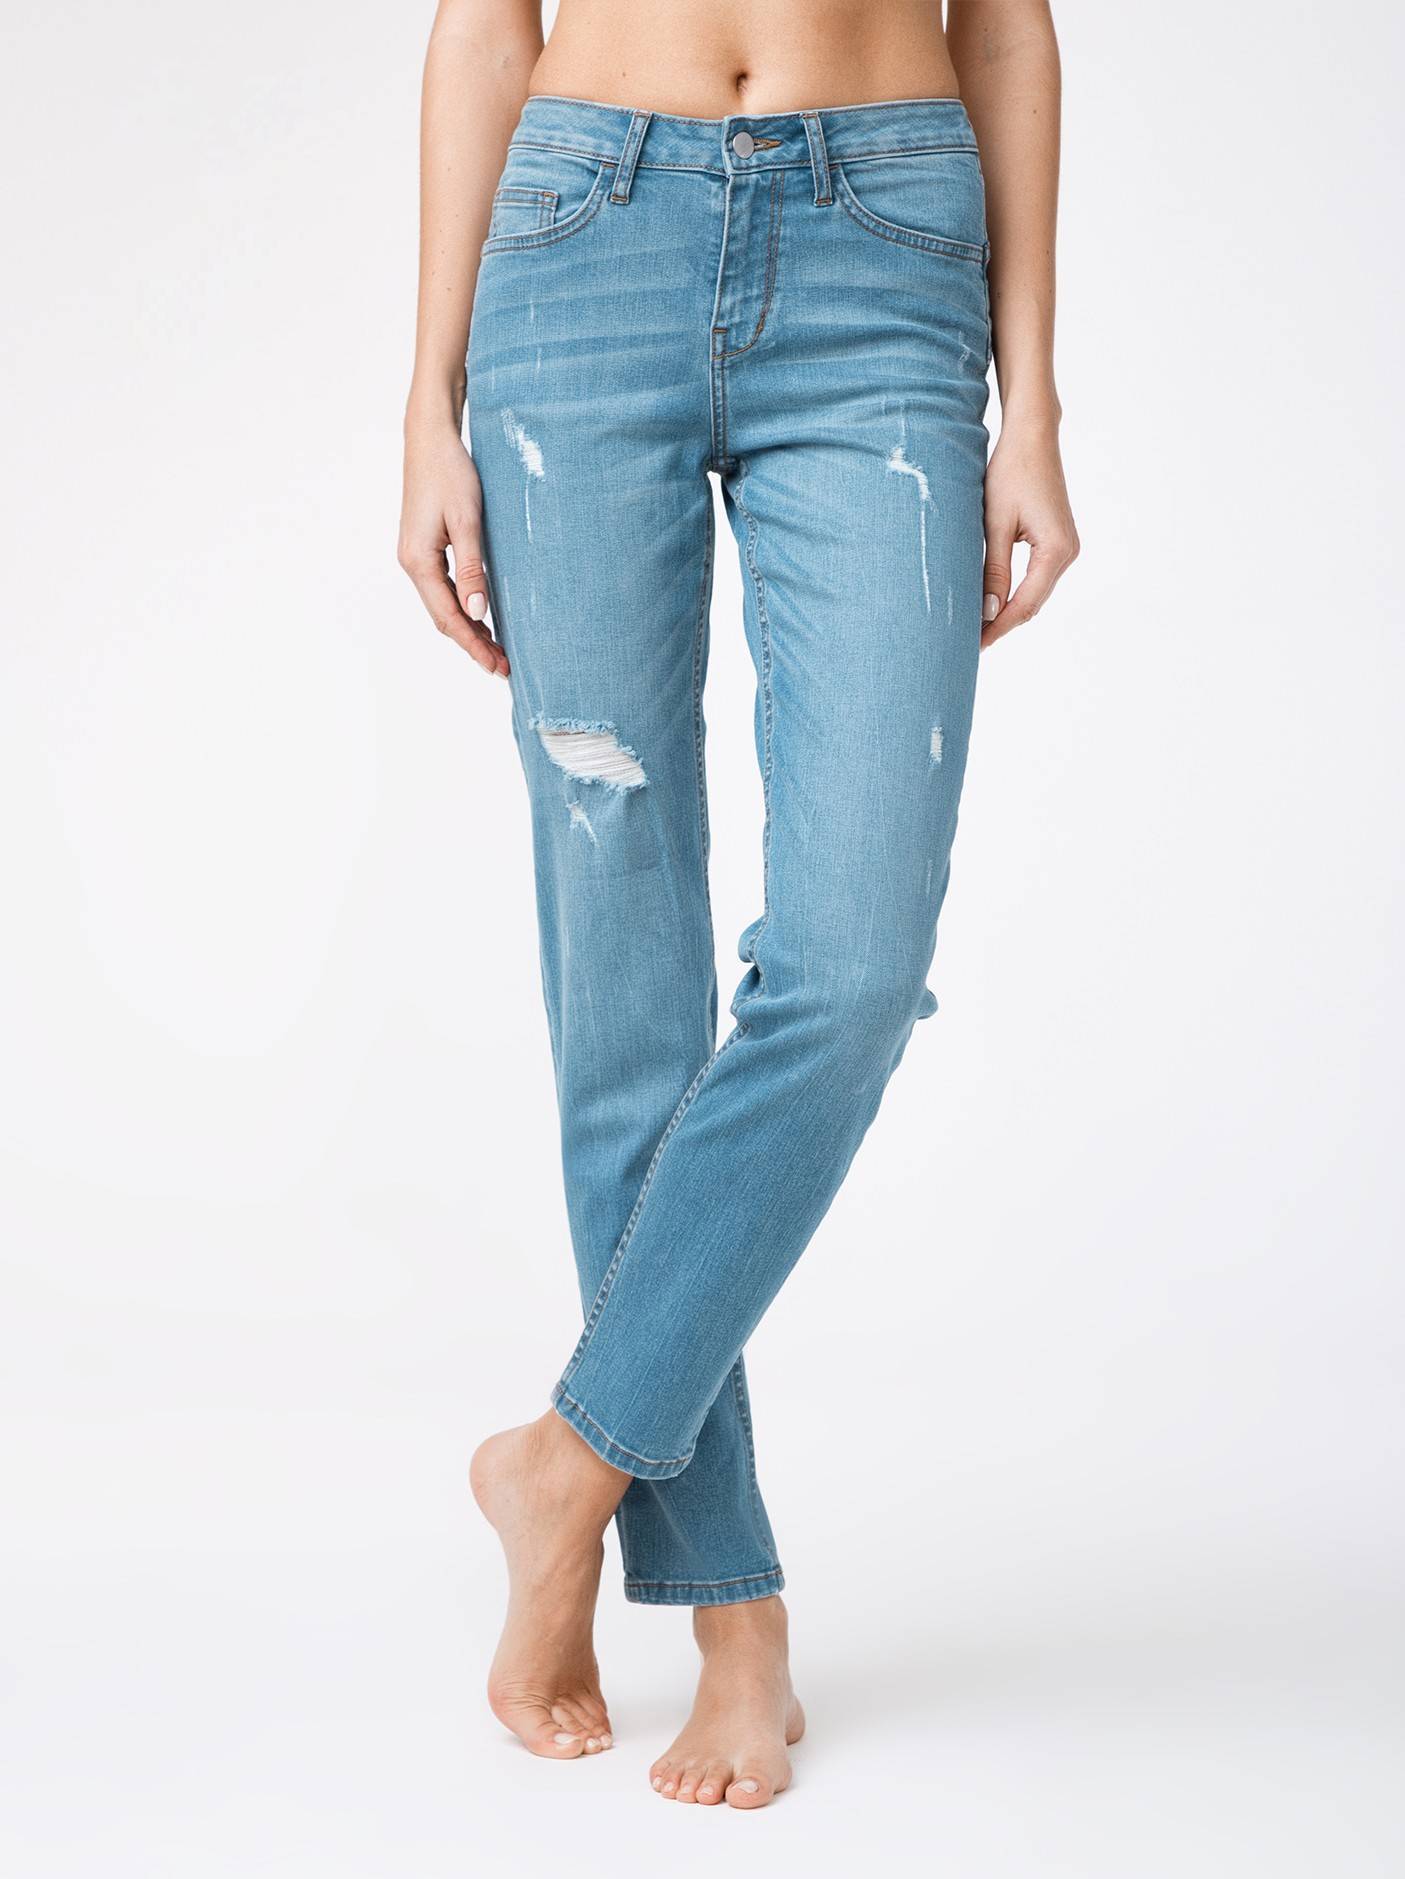 Ультрамодные eco-friendly джинсы с эффектом потертости CON-145 Conte ⭐️, цвет mid blue, размер 164-102 - фото 1